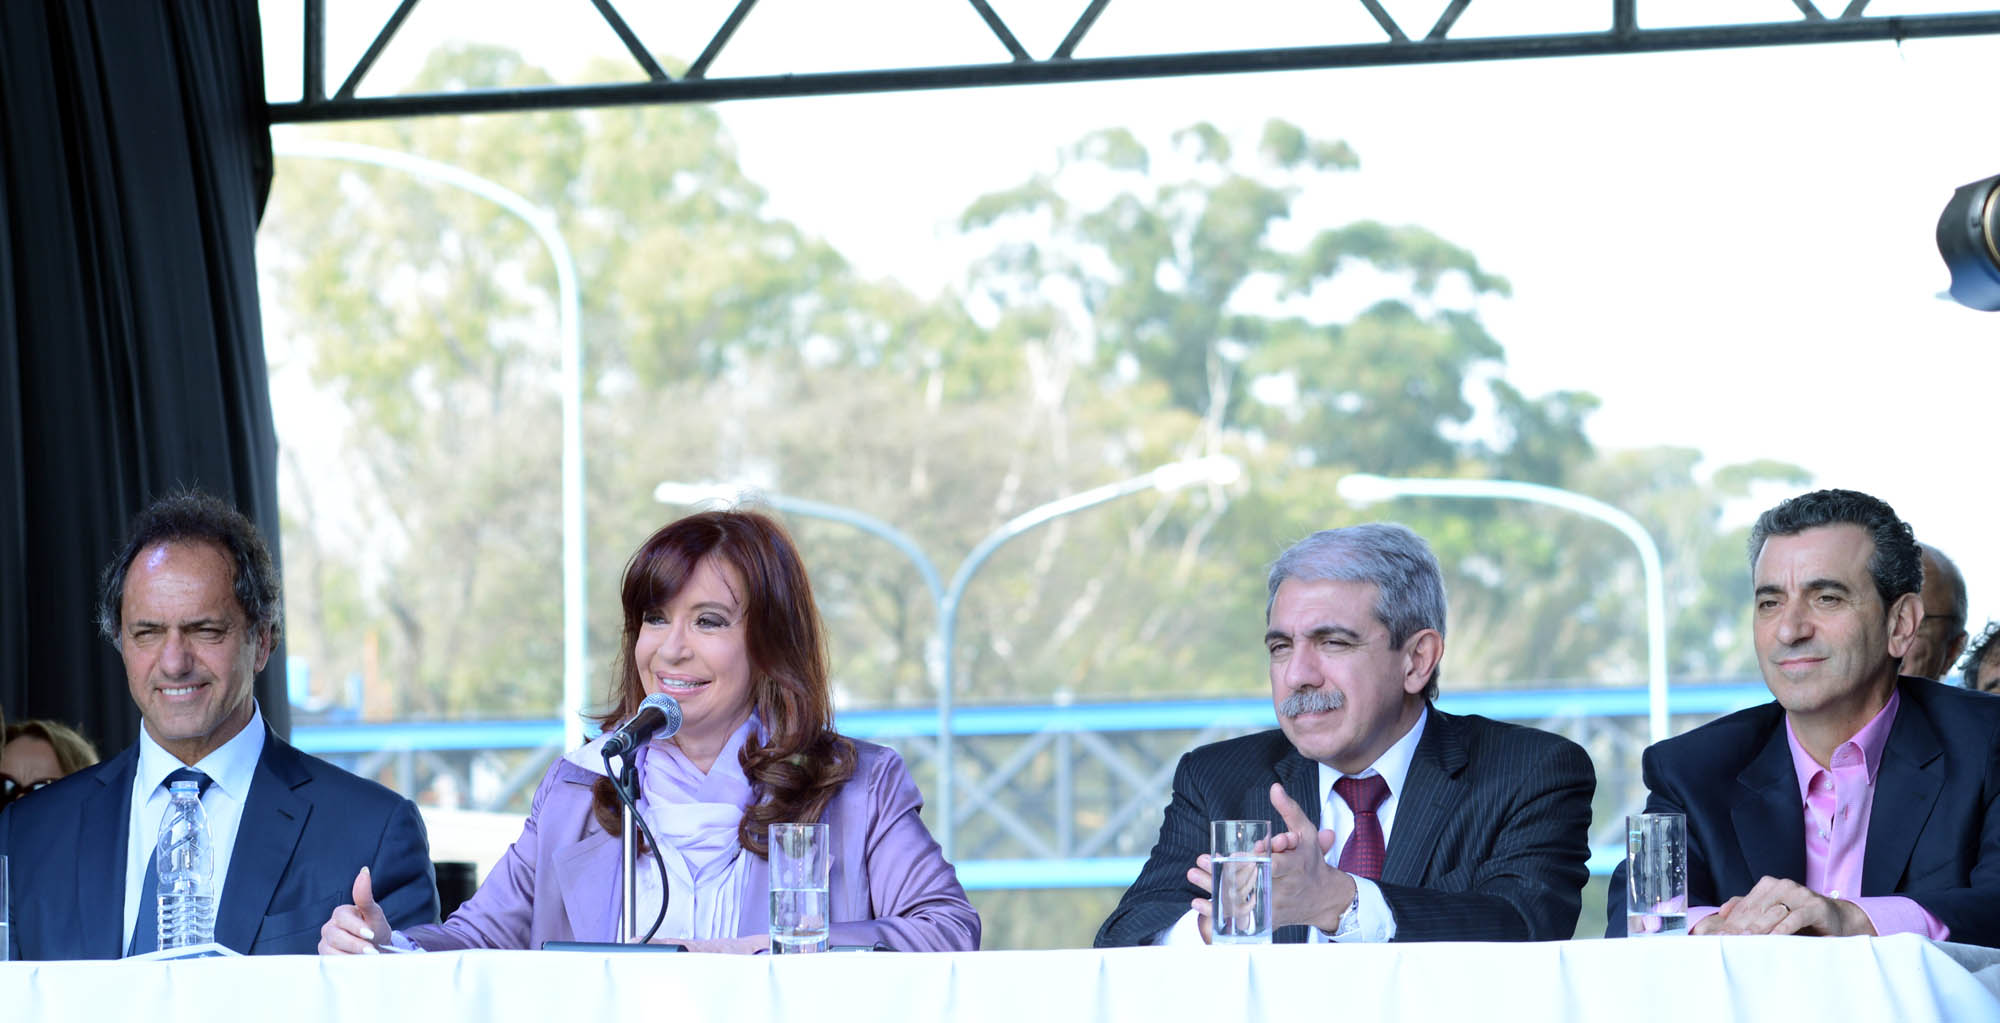 La Presidenta junto a Daniel Scioli, Aníbal Fernández, y Florencio Randazzo